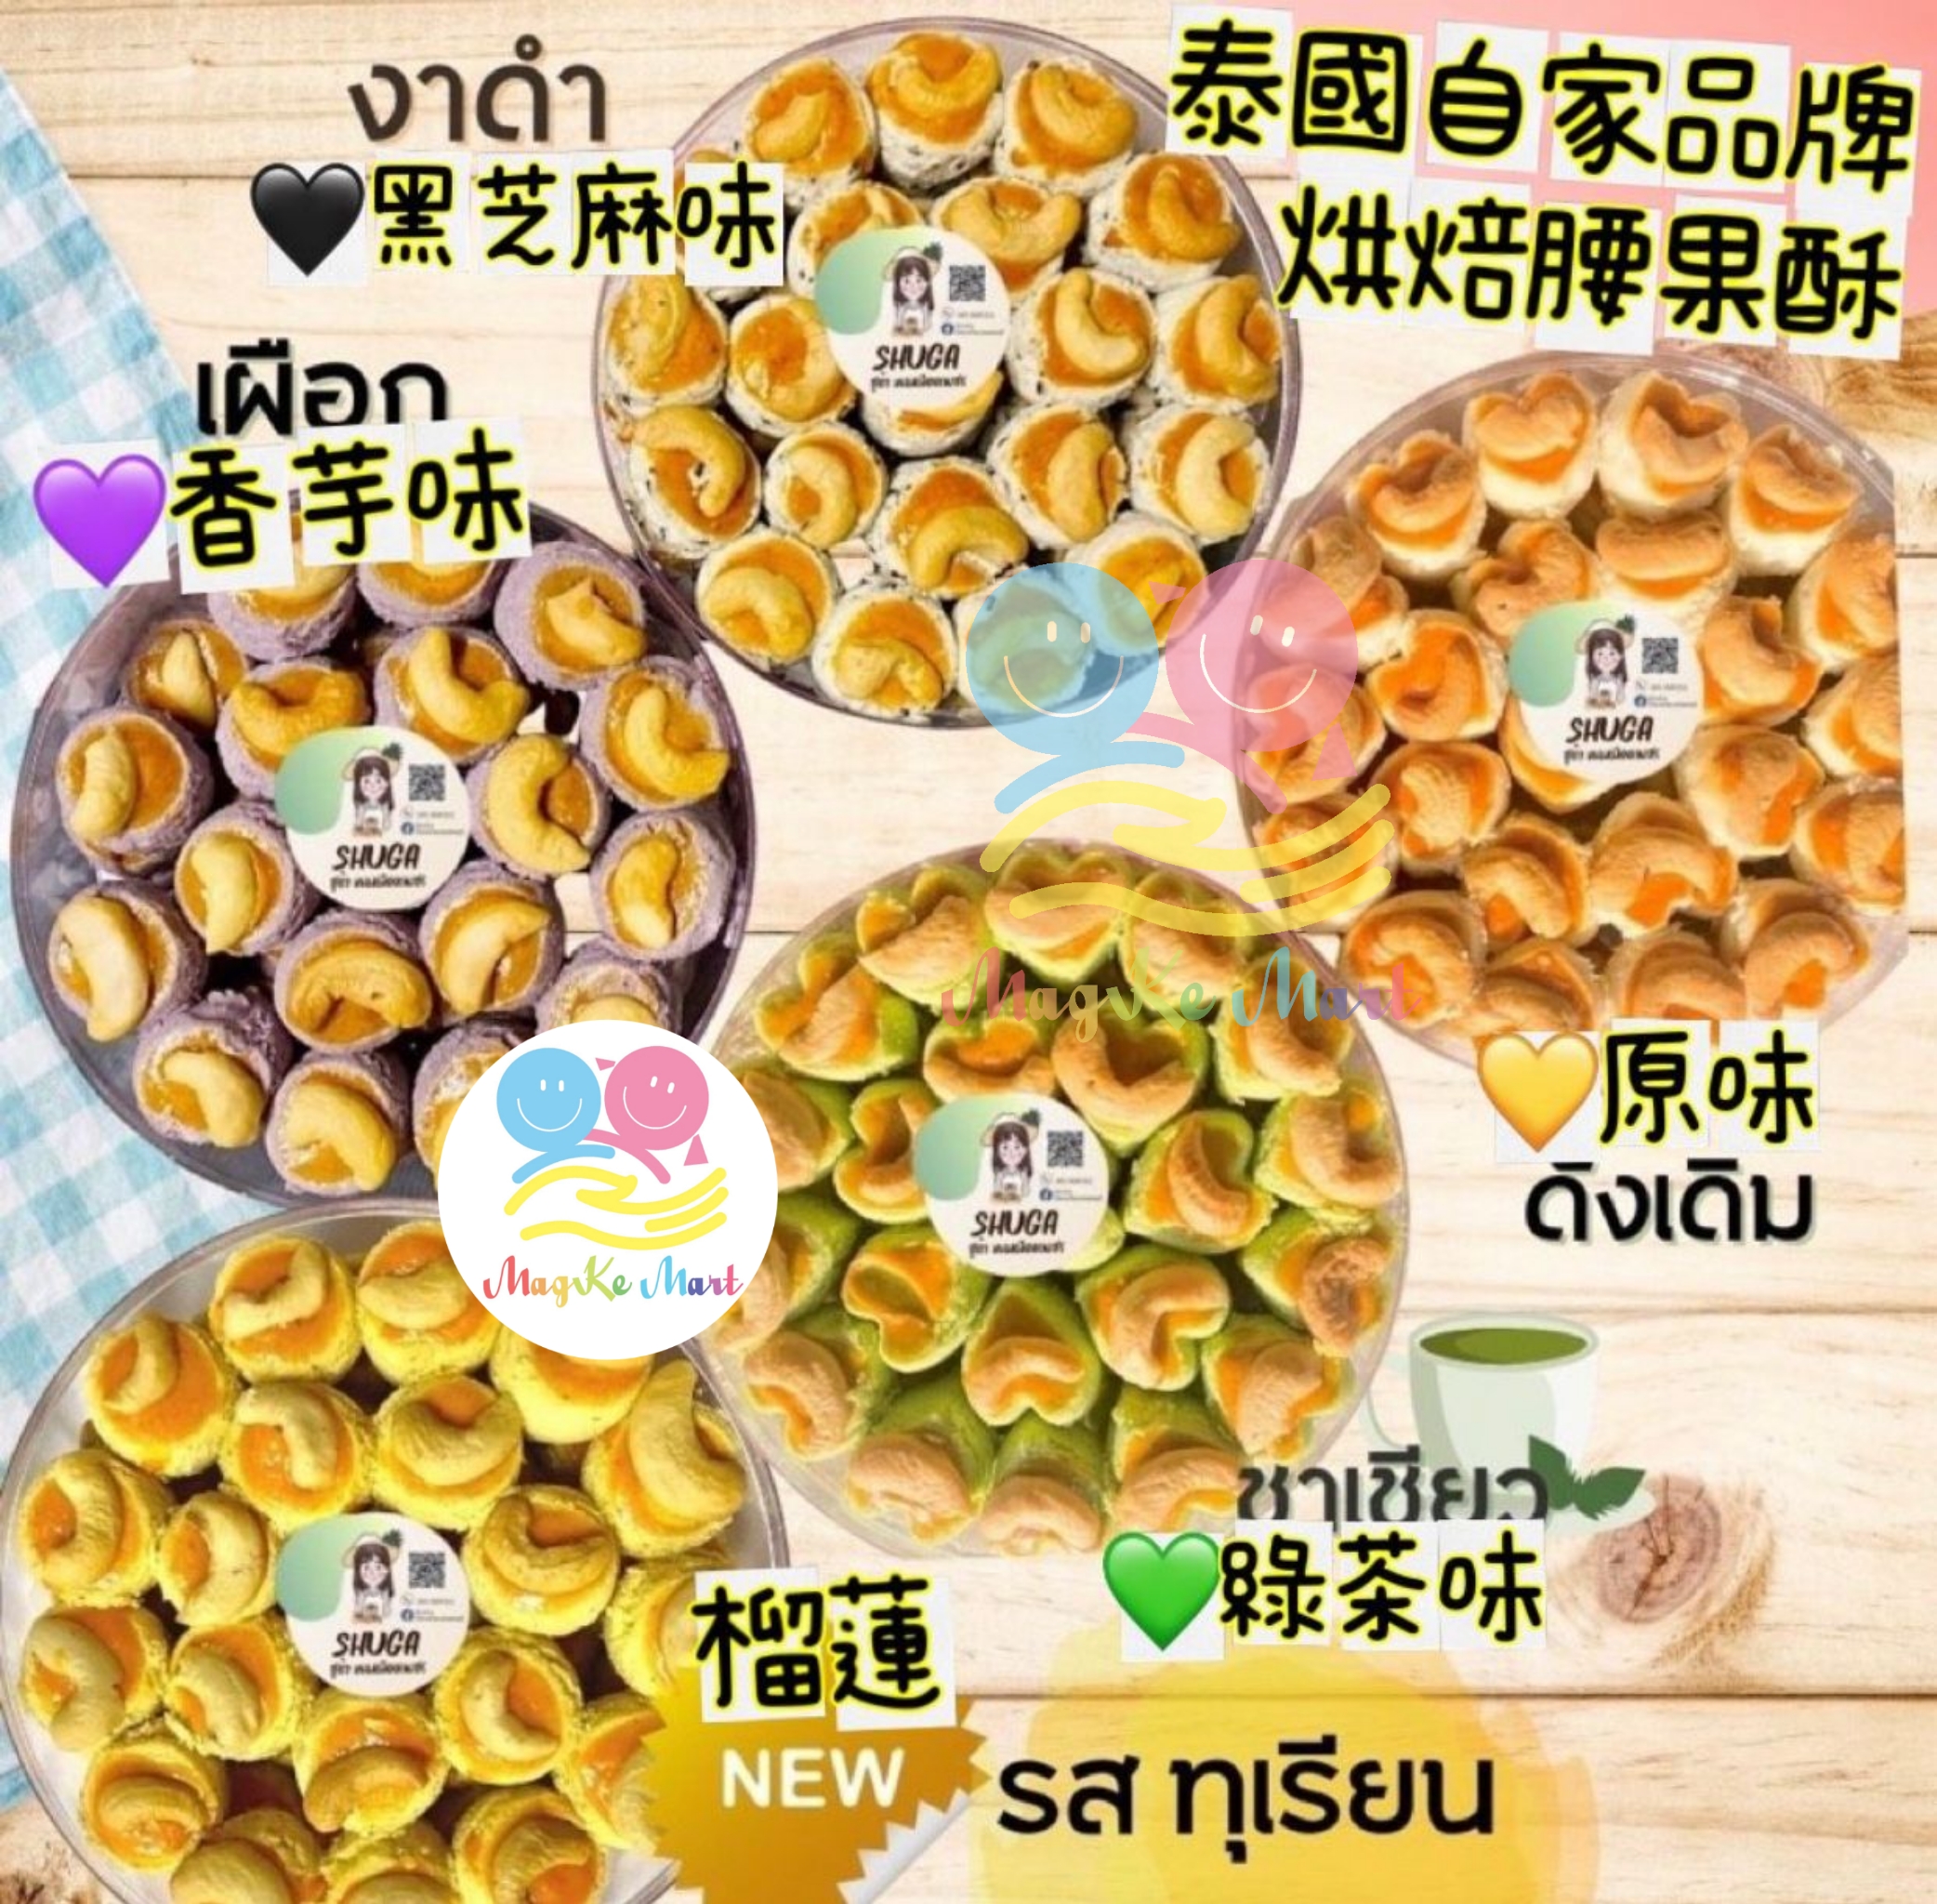 泰國自家品牌烘焙腰果酥(約230g)